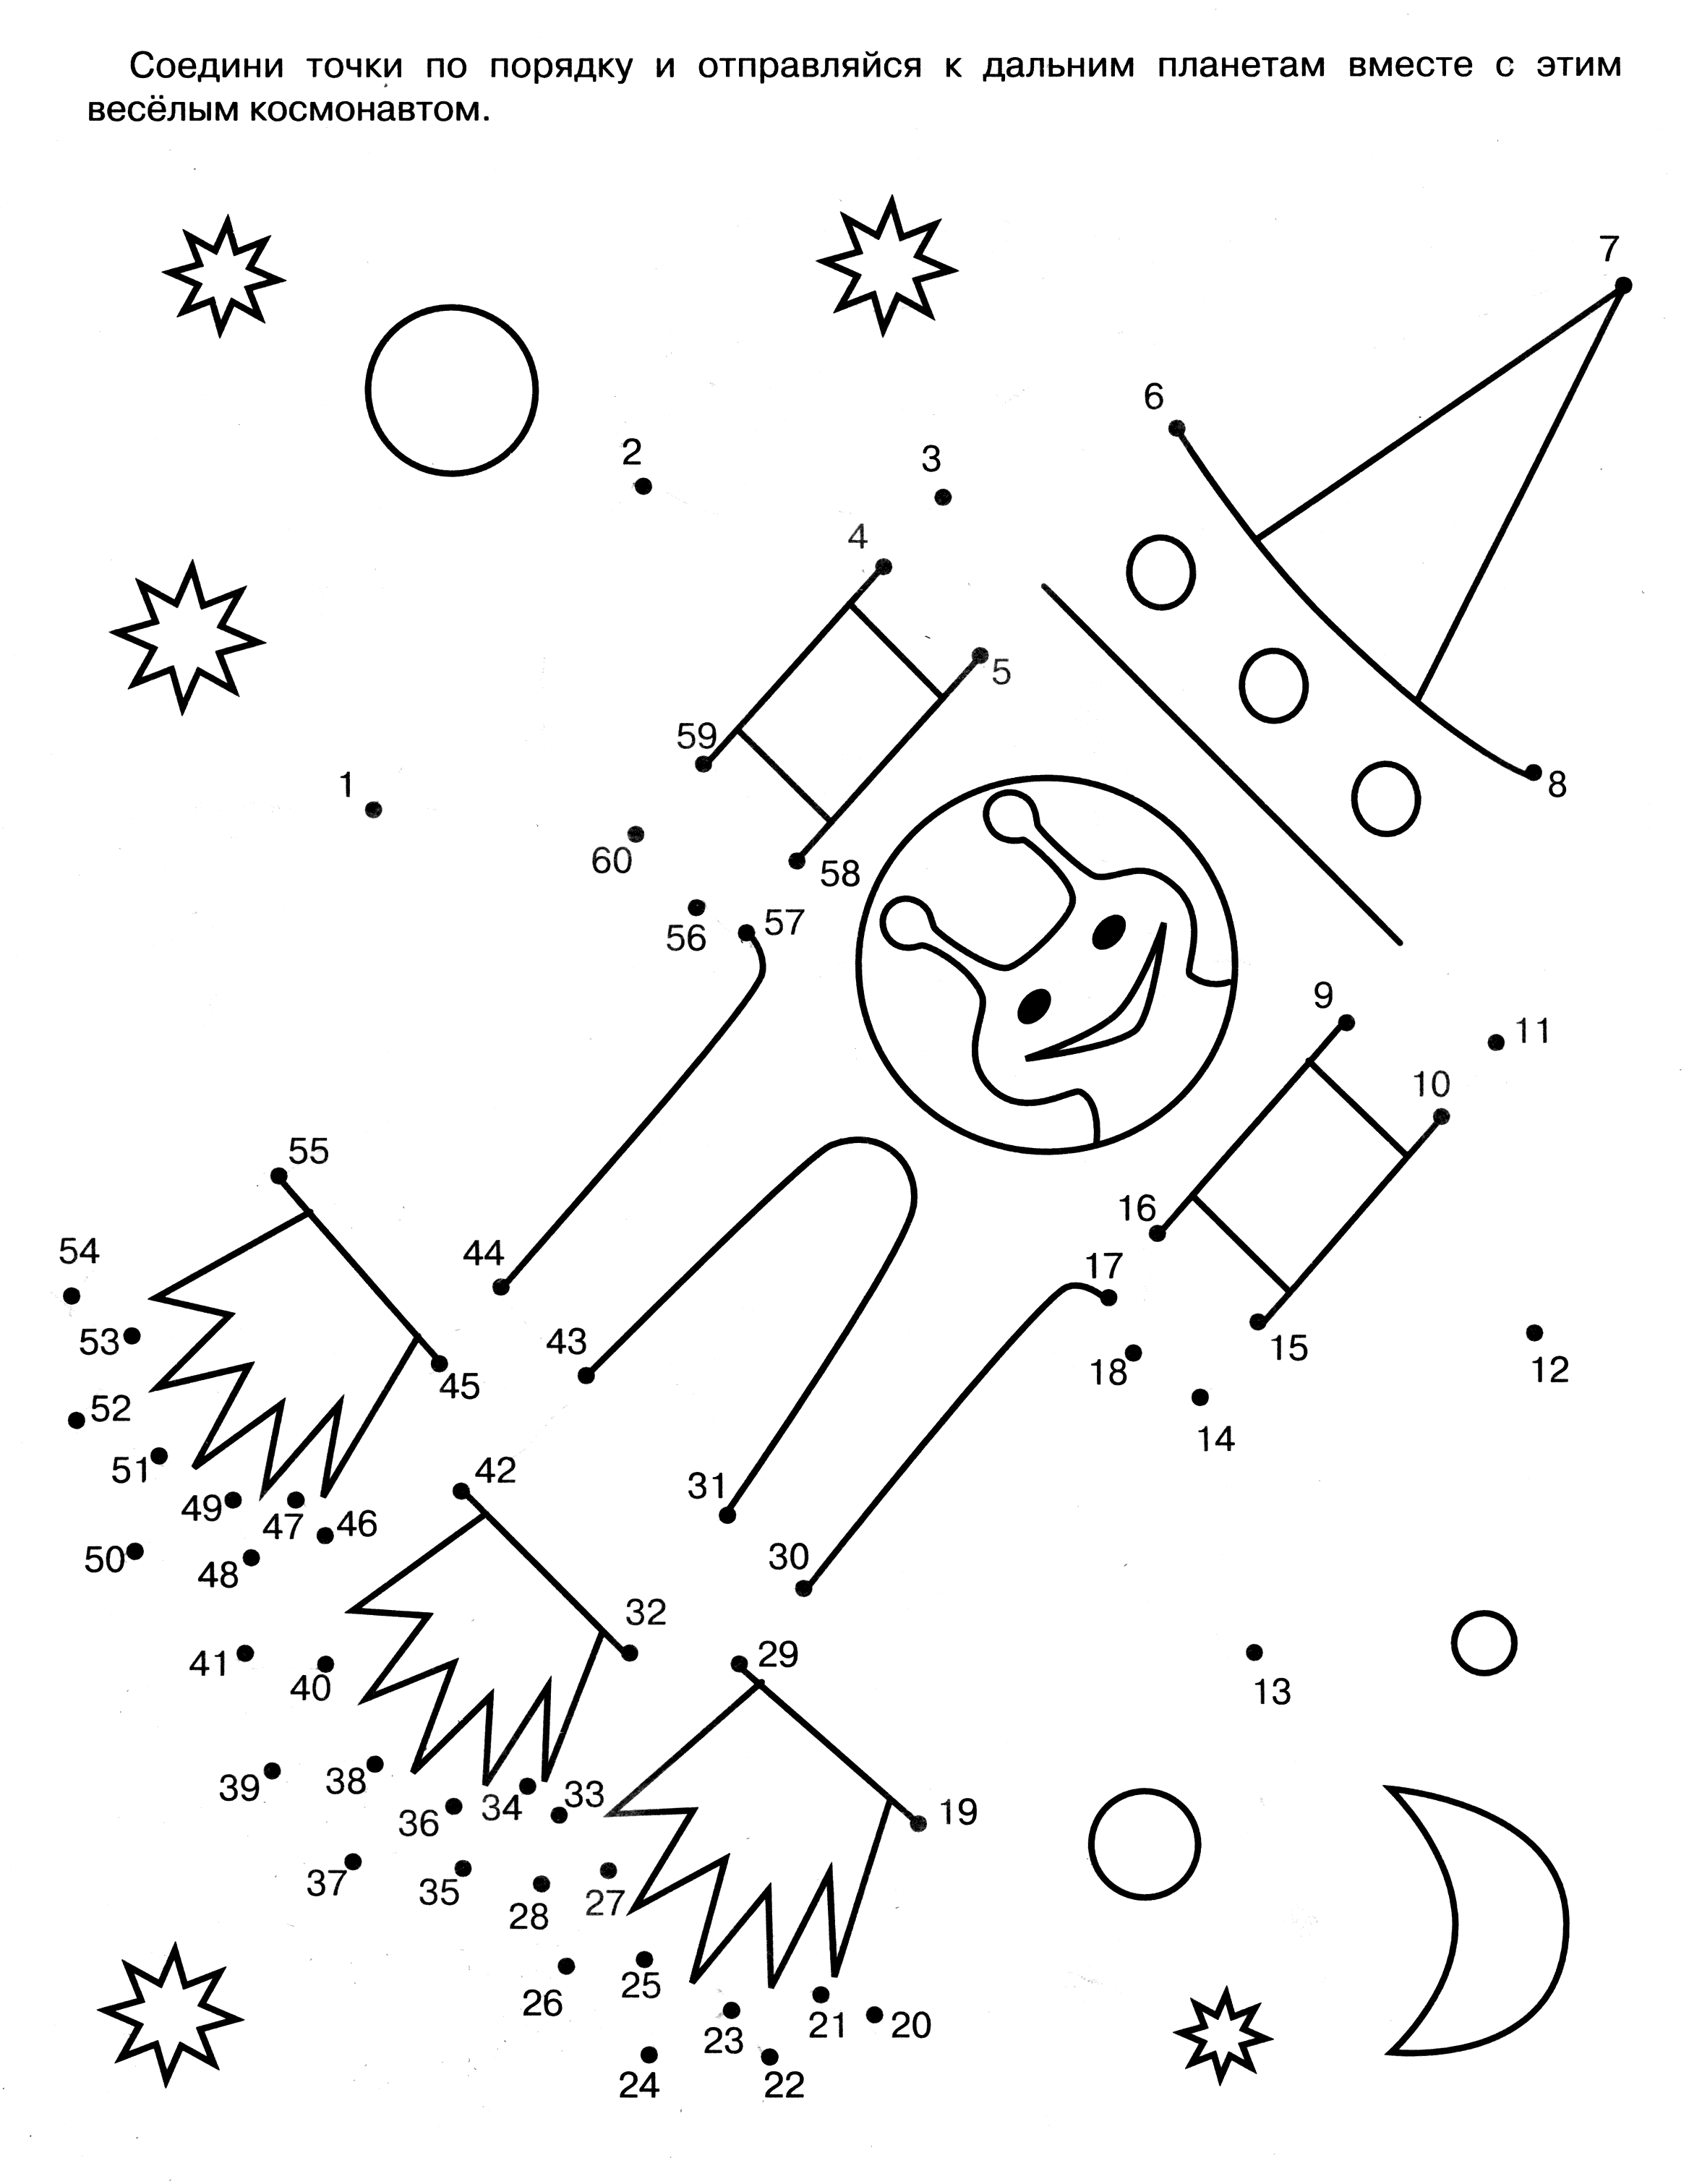 Задания ко дню космонавтики. Космос задания для дошкольников. Космонавтика задания для дошкольников. Задания про космос для детей 6-7 лет. Космические раскраски с заданиями.